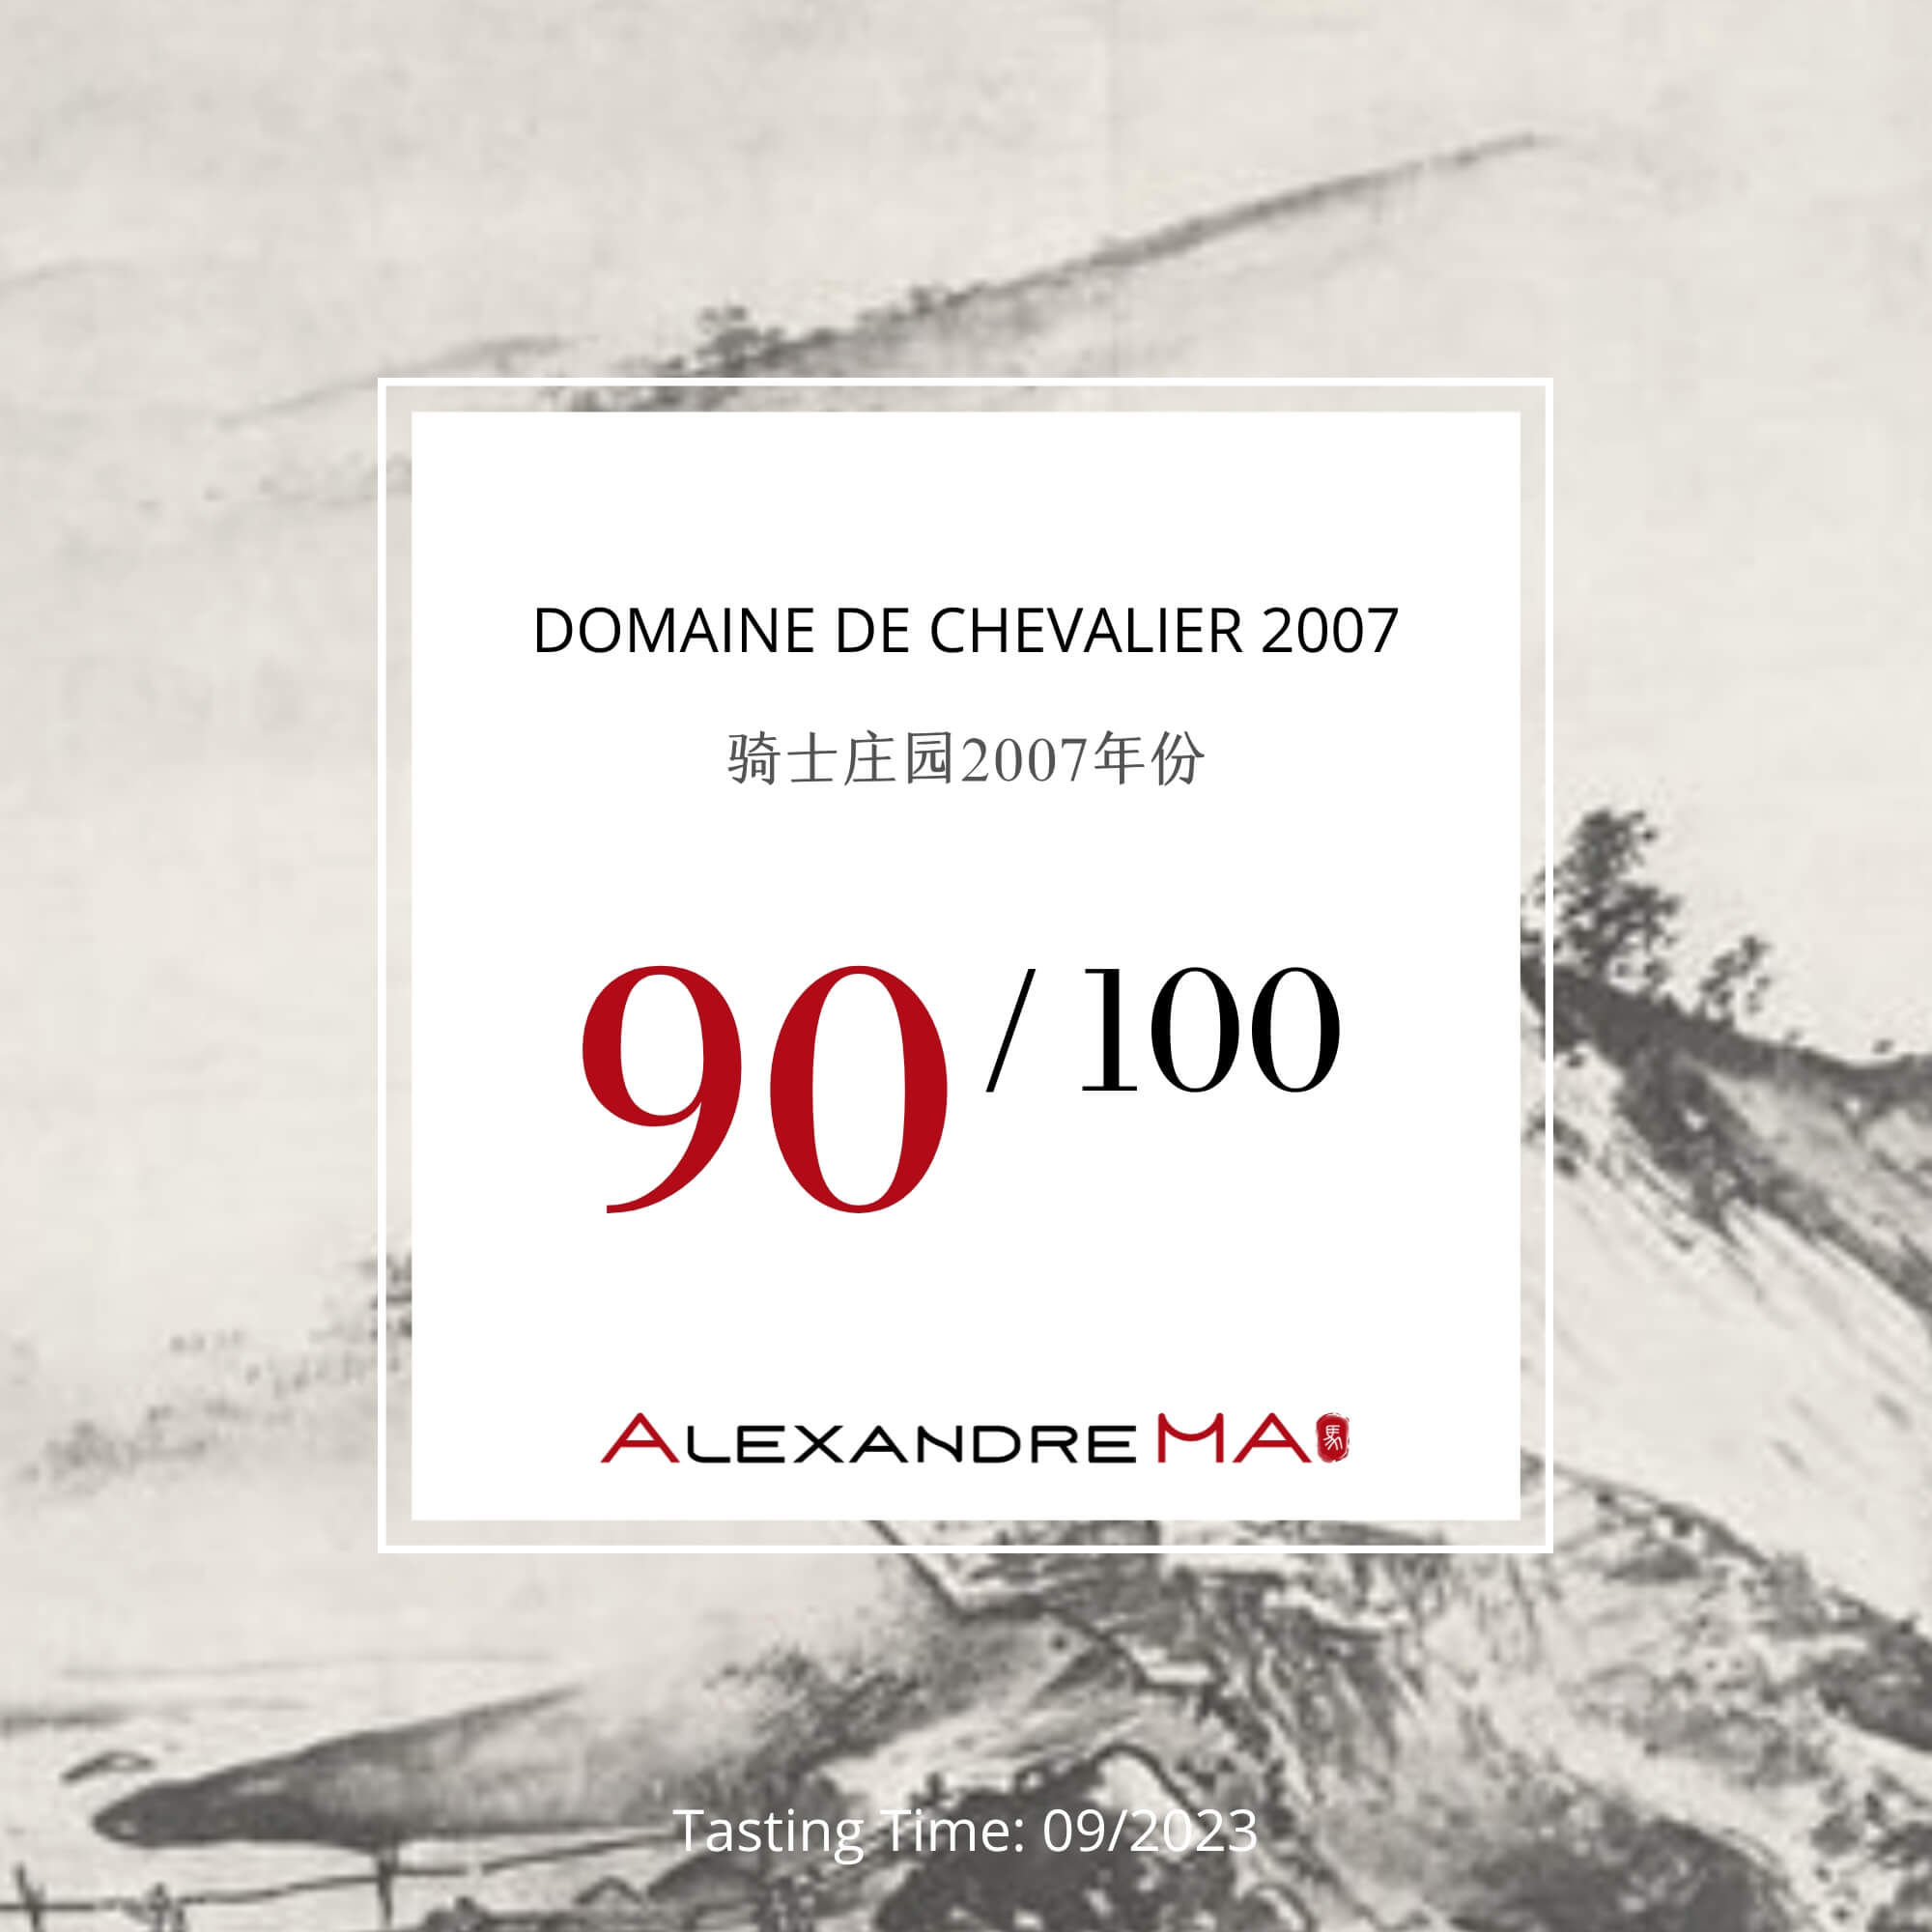 Domaine de Chevalier 2007 - Alexandre MA